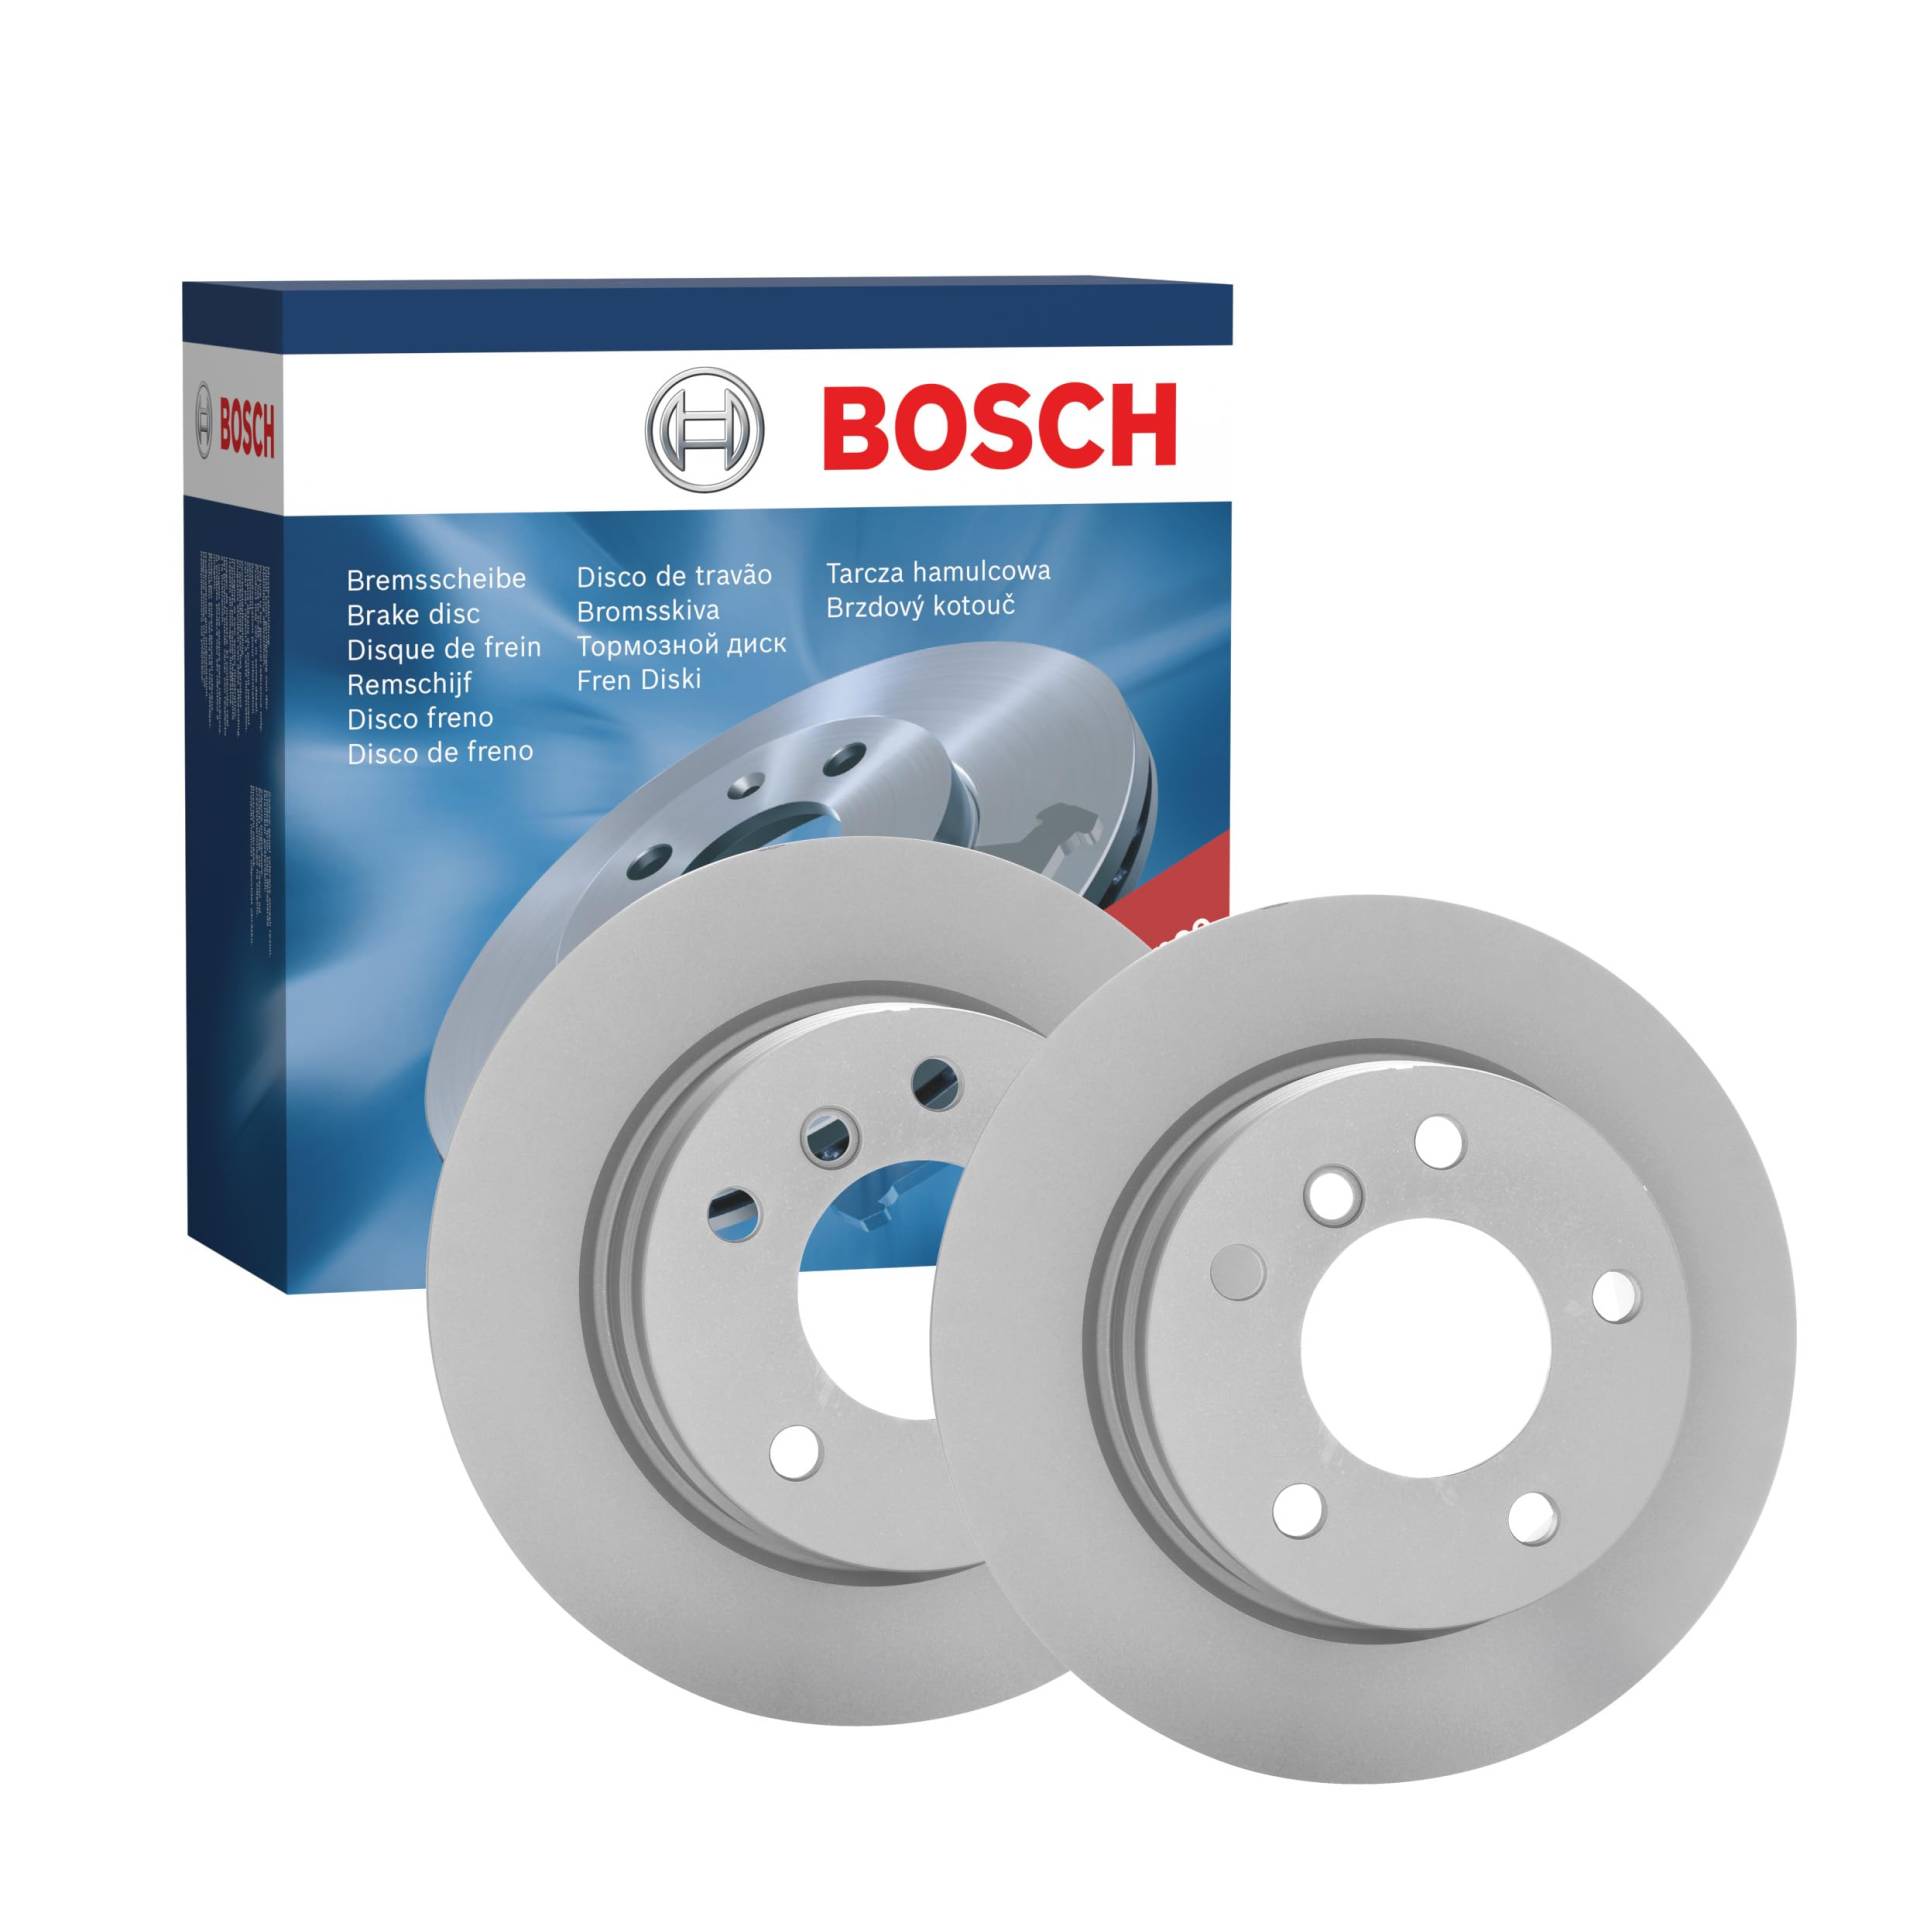 Bosch BD483 Bremsscheiben - Hinterachse - ECE-R90 Zertifizierung - zwei Bremsscheiben pro Set von Bosch Automotive